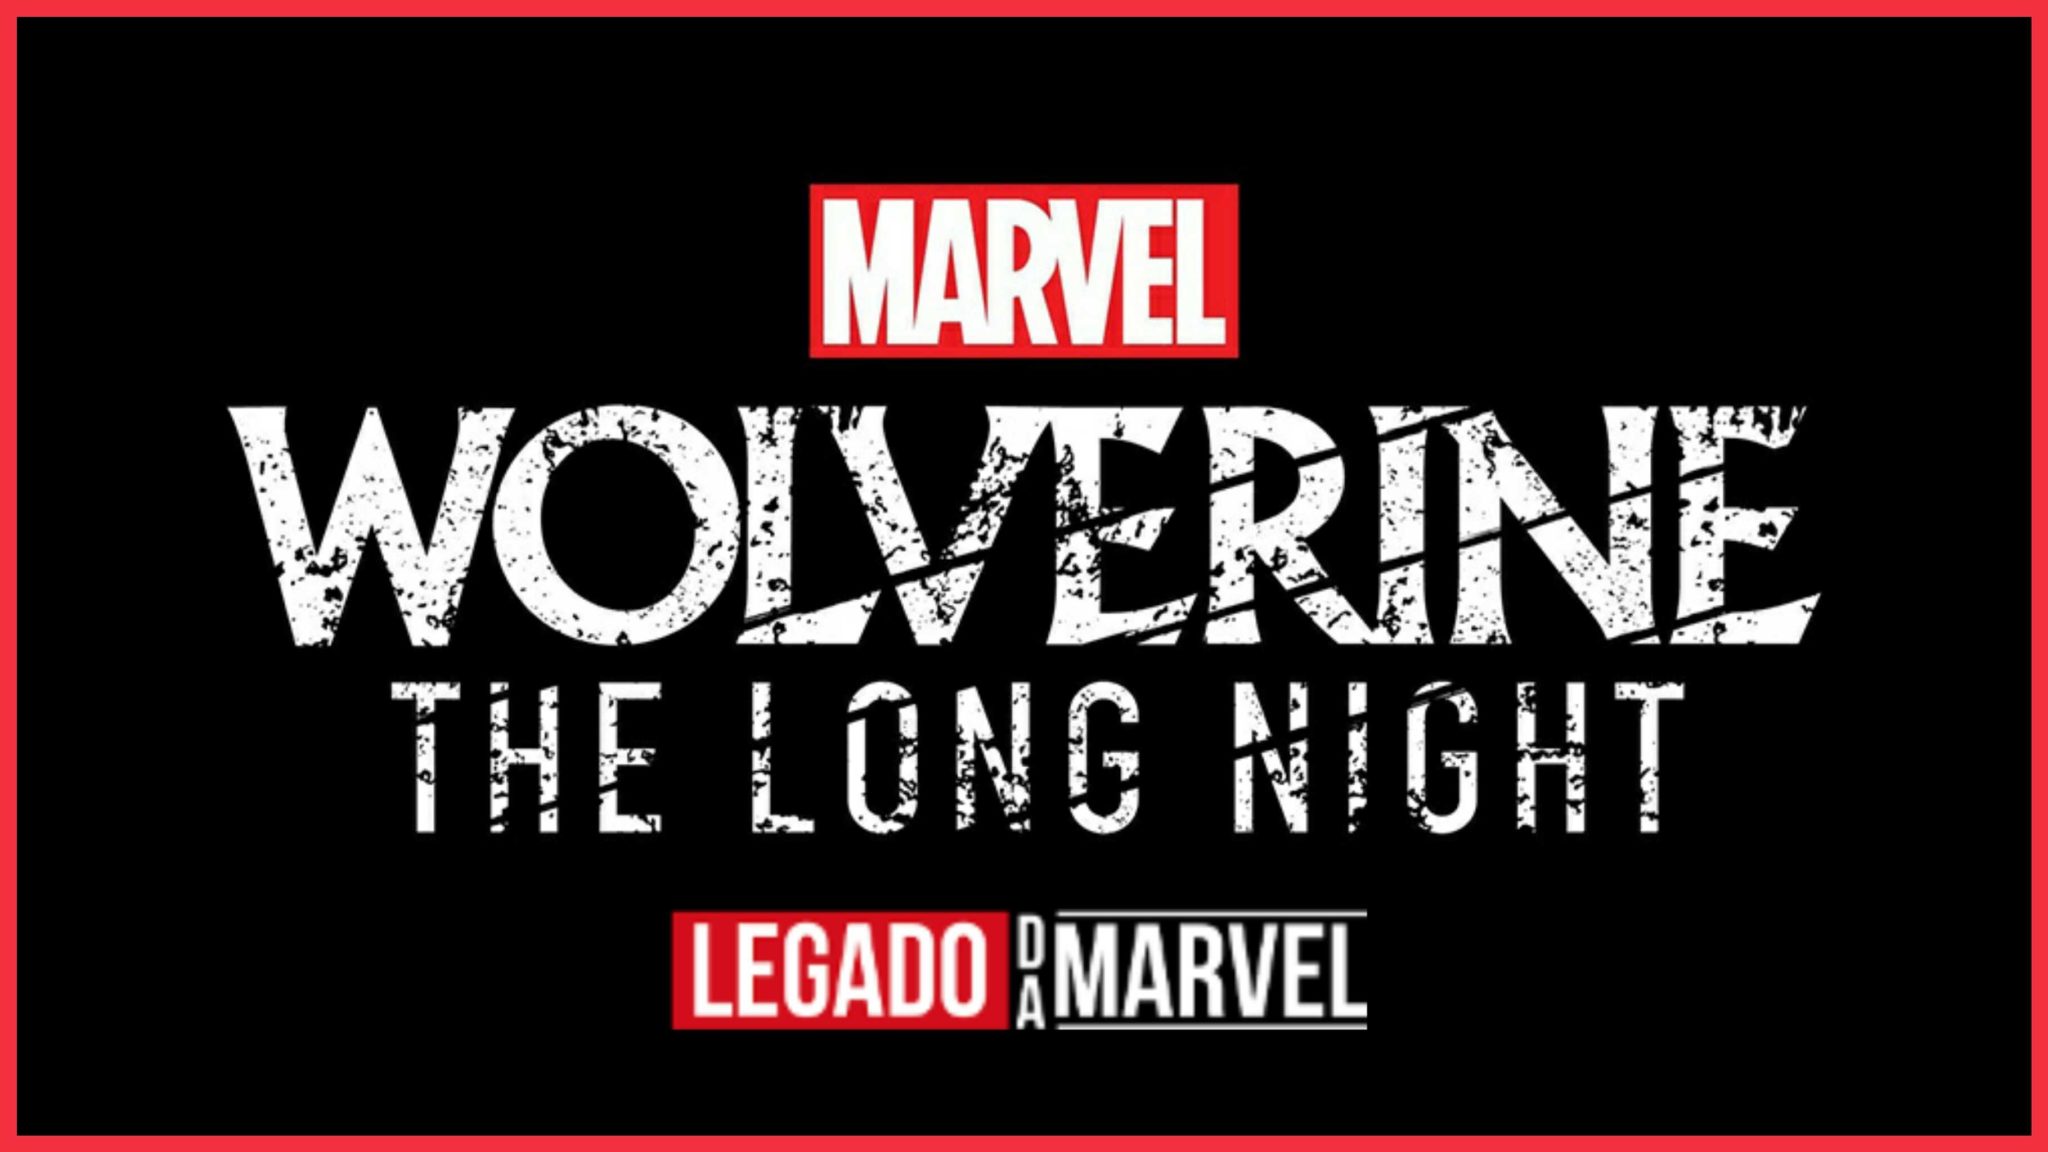 LOGAN NÃO MORREU: Wolverine terá podcast só para ele